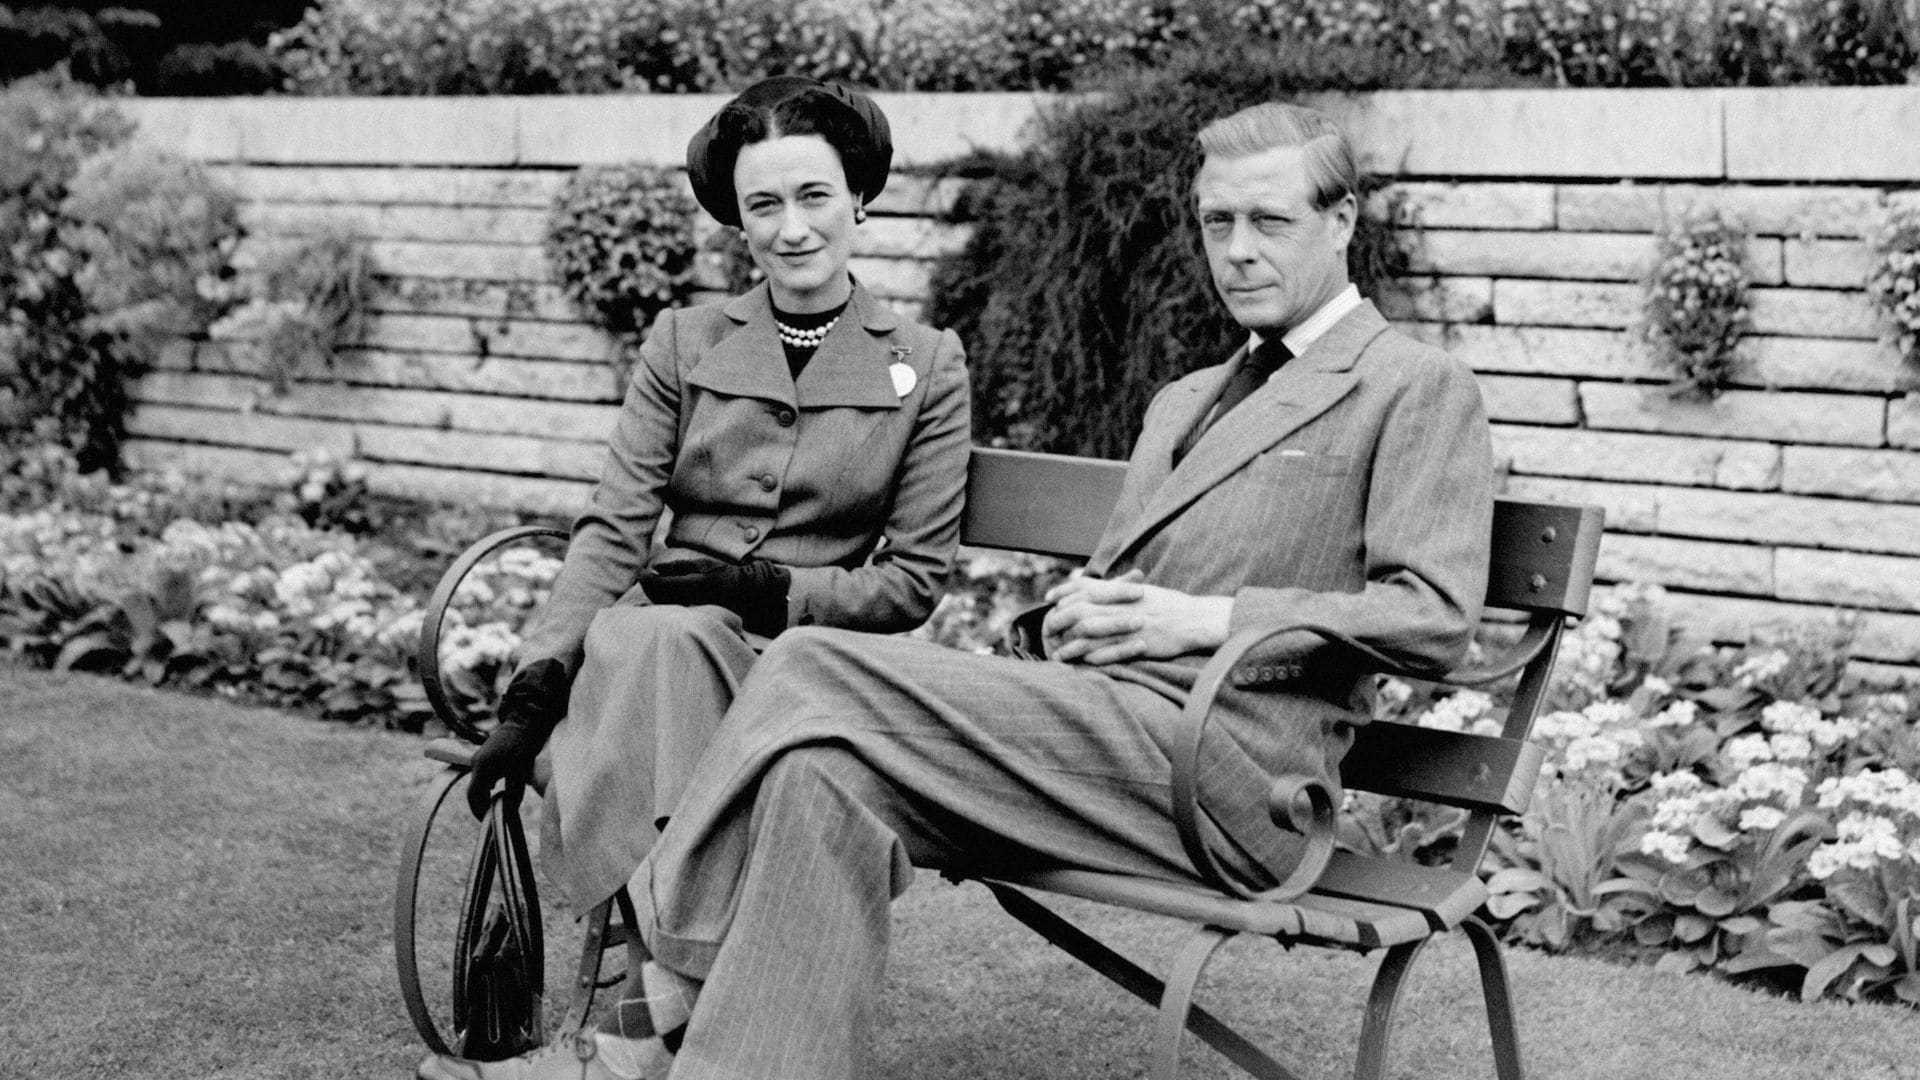 Se subastan unas memorias que ofrecen una visión distinta sobre la relación entre Eduardo VIII y Wallis Simpson